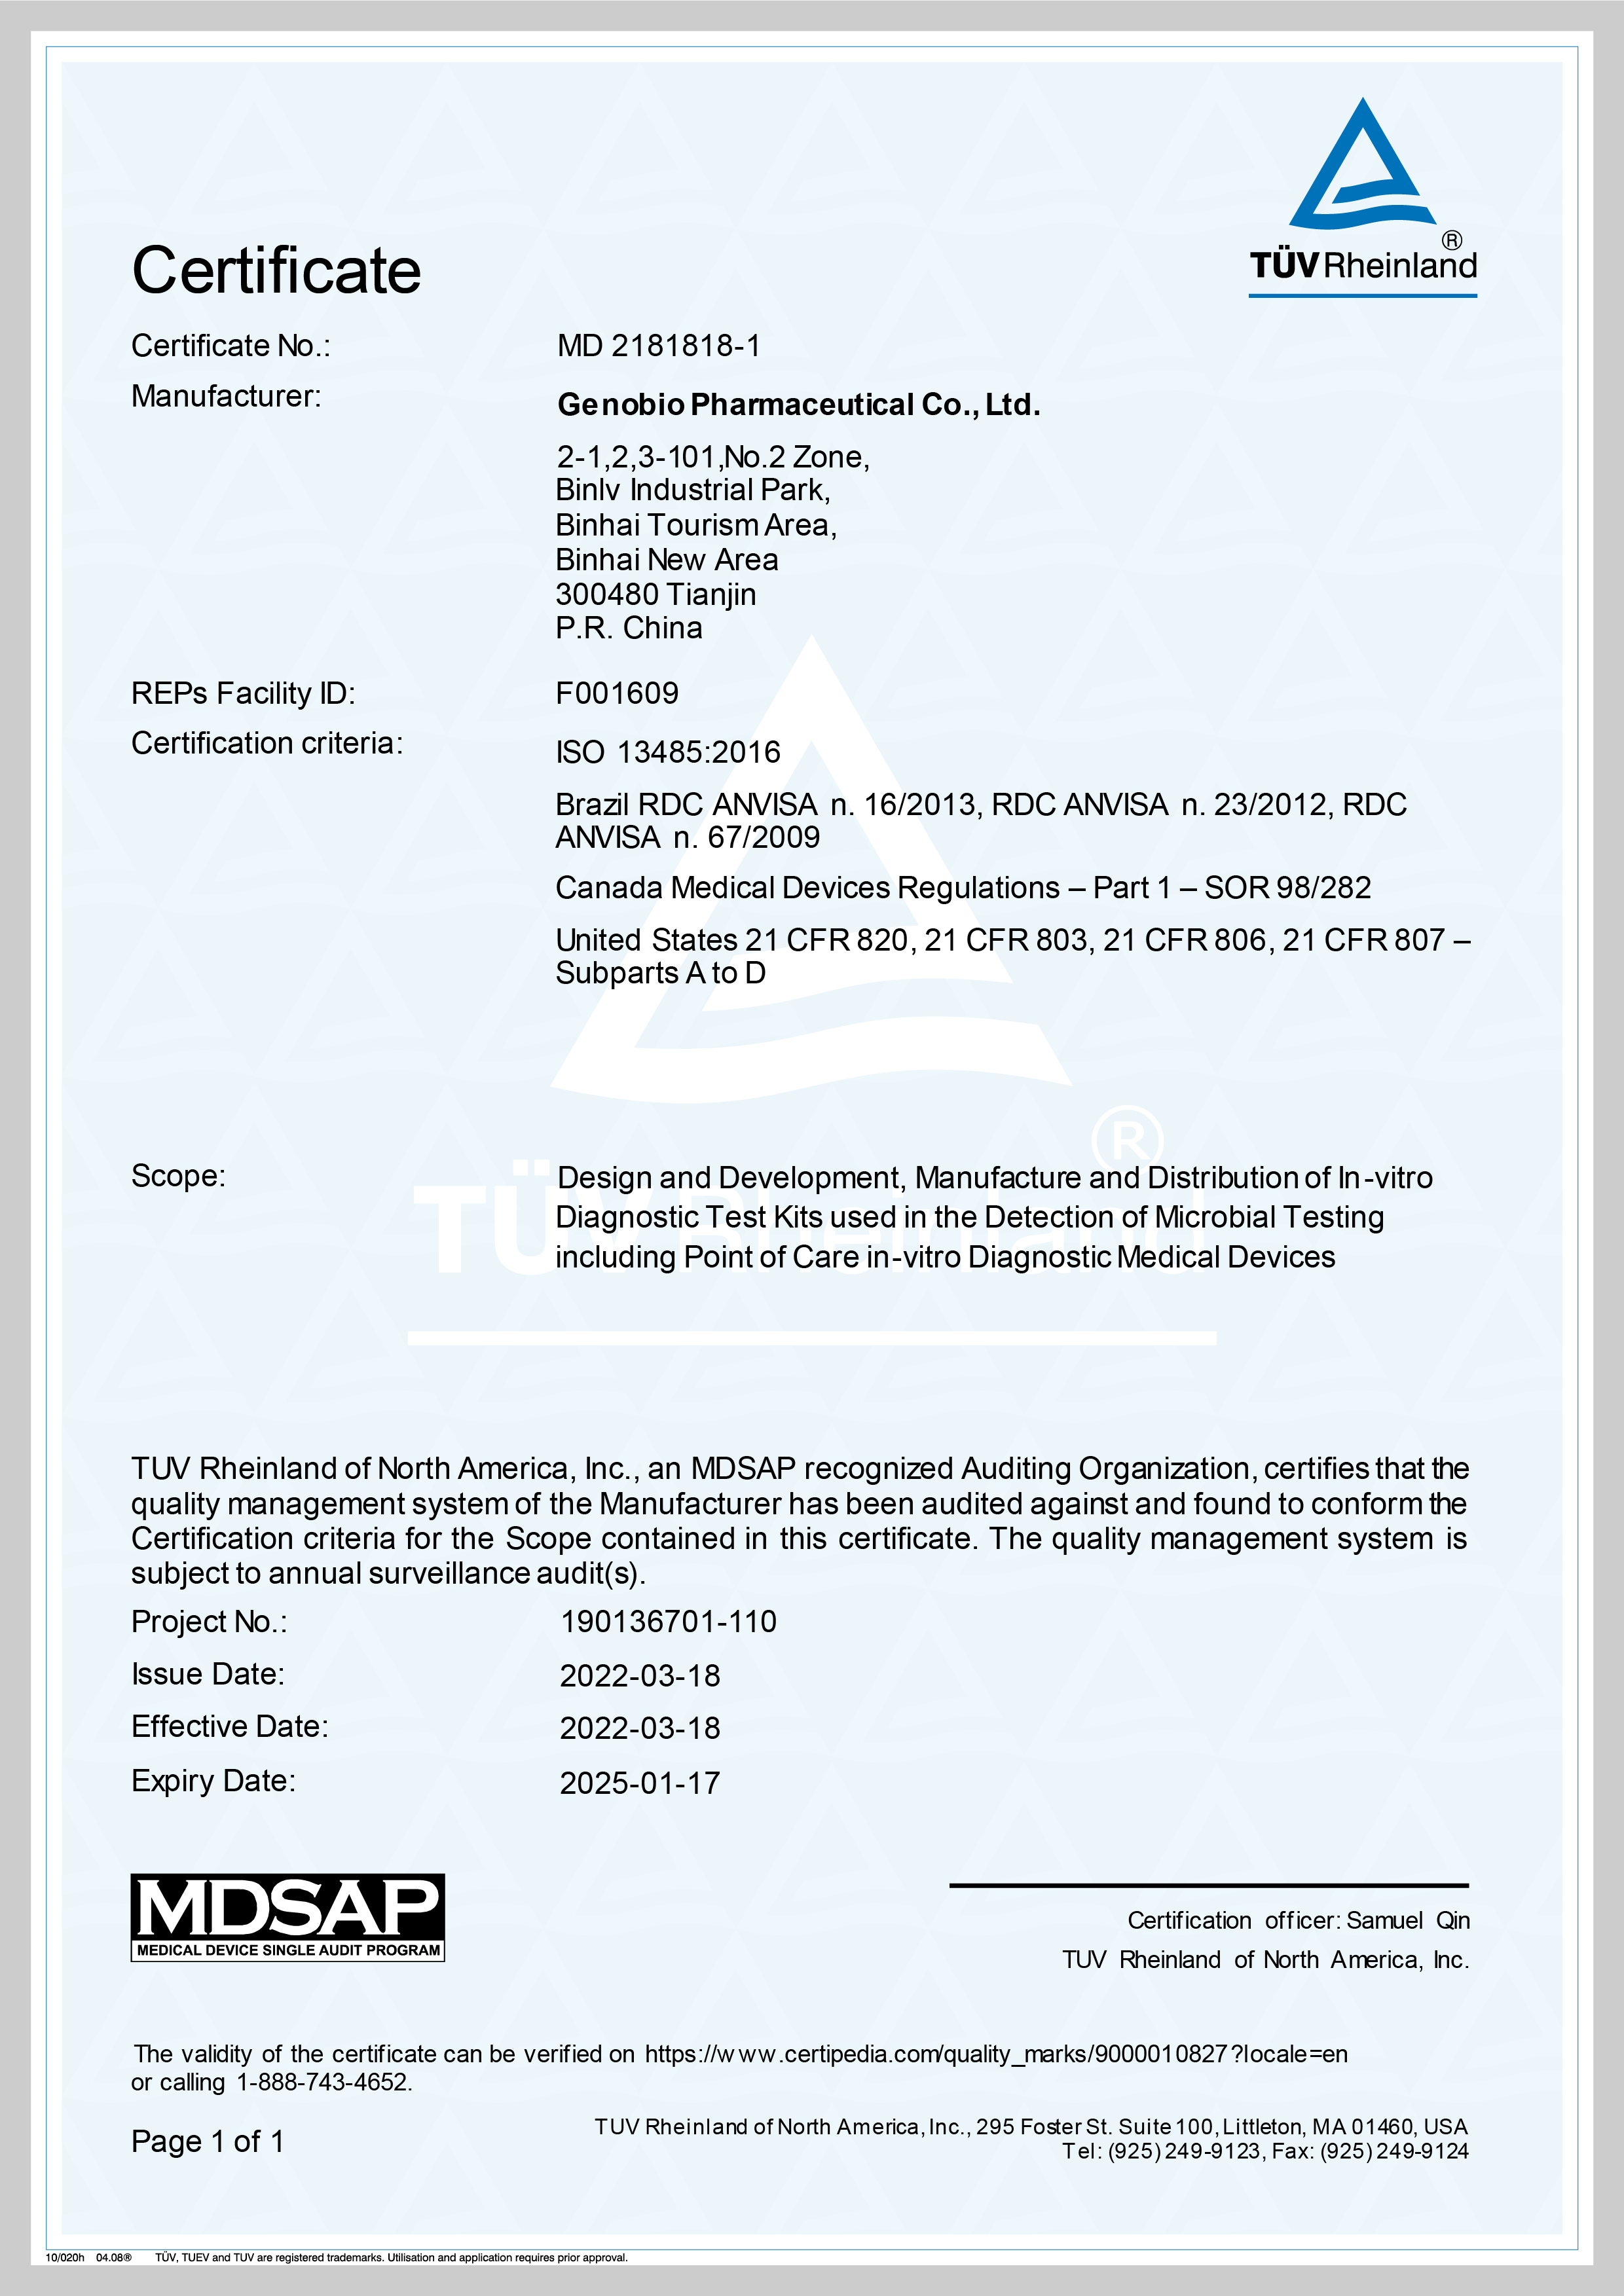 जेनोबियो ने एमडीएसएपी प्रमाणन प्राप्त किया——चिकित्सा उपकरण निर्माण उद्योग में उच्चतम नियामक मानक